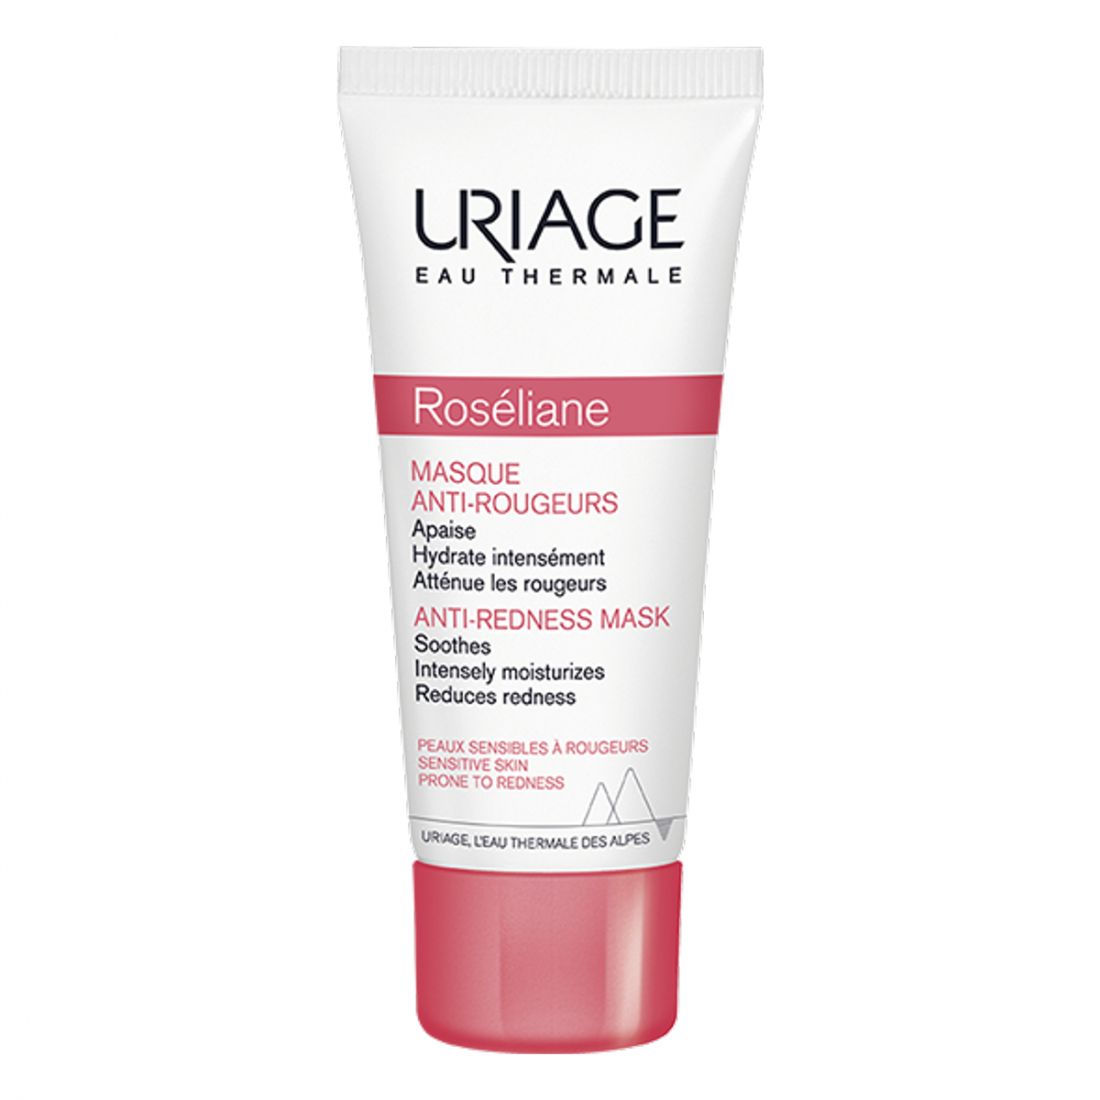 Uriage - 'Roséliane' Masque AntiRougeurs - 40 ml